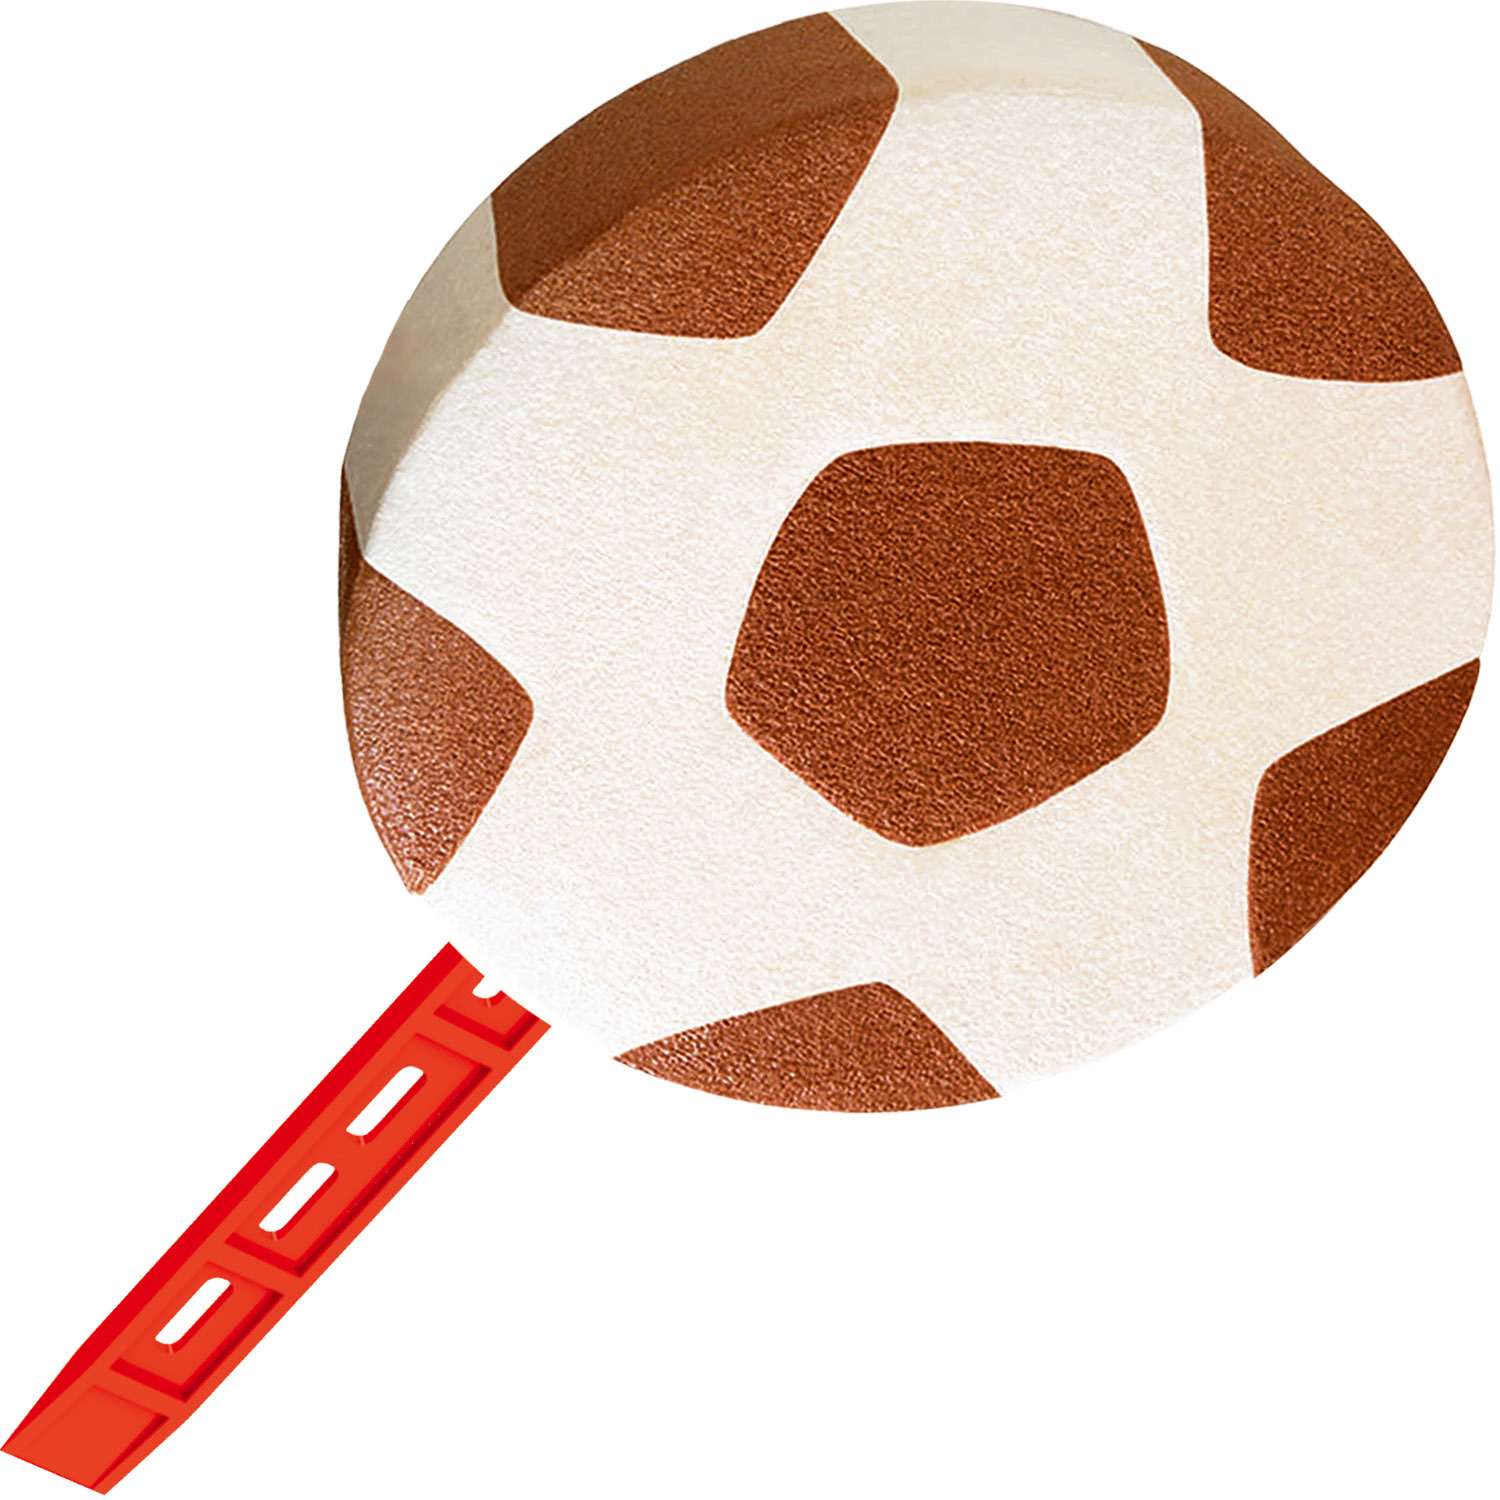 Мороженое МАХ эскимо Футбольный мяч 57г - фото 2